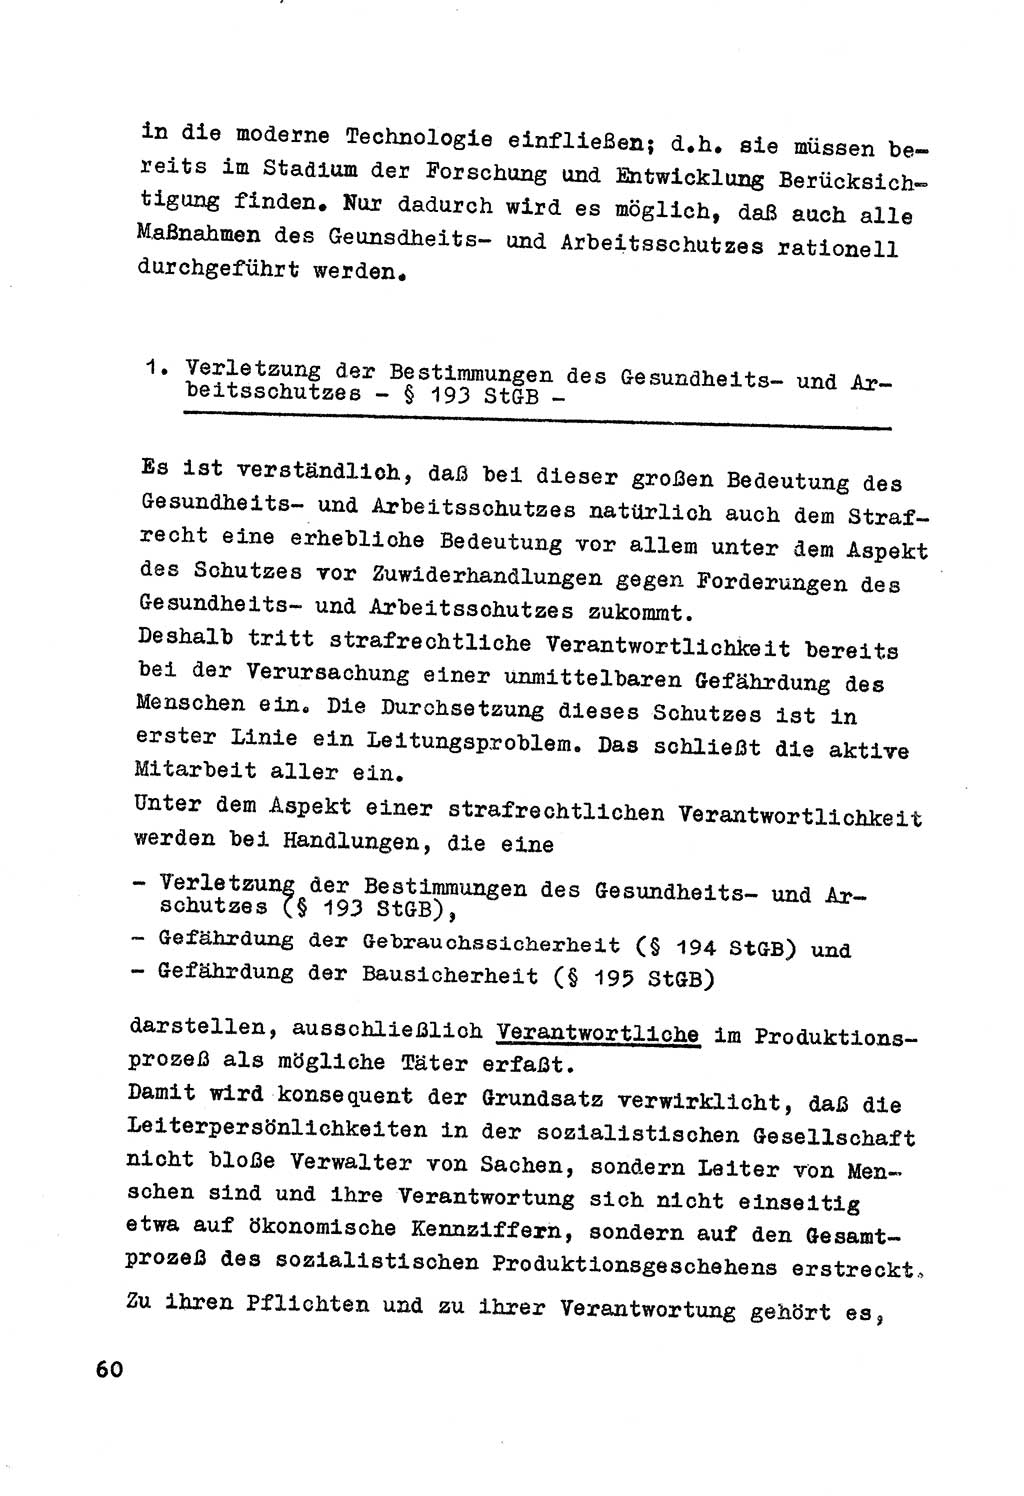 Strafrecht der DDR (Deutsche Demokratische Republik), Besonderer Teil, Lehrmaterial, Heft 7 1970, Seite 60 (Strafr. DDR BT Lehrmat. H. 7 1970, S. 60)